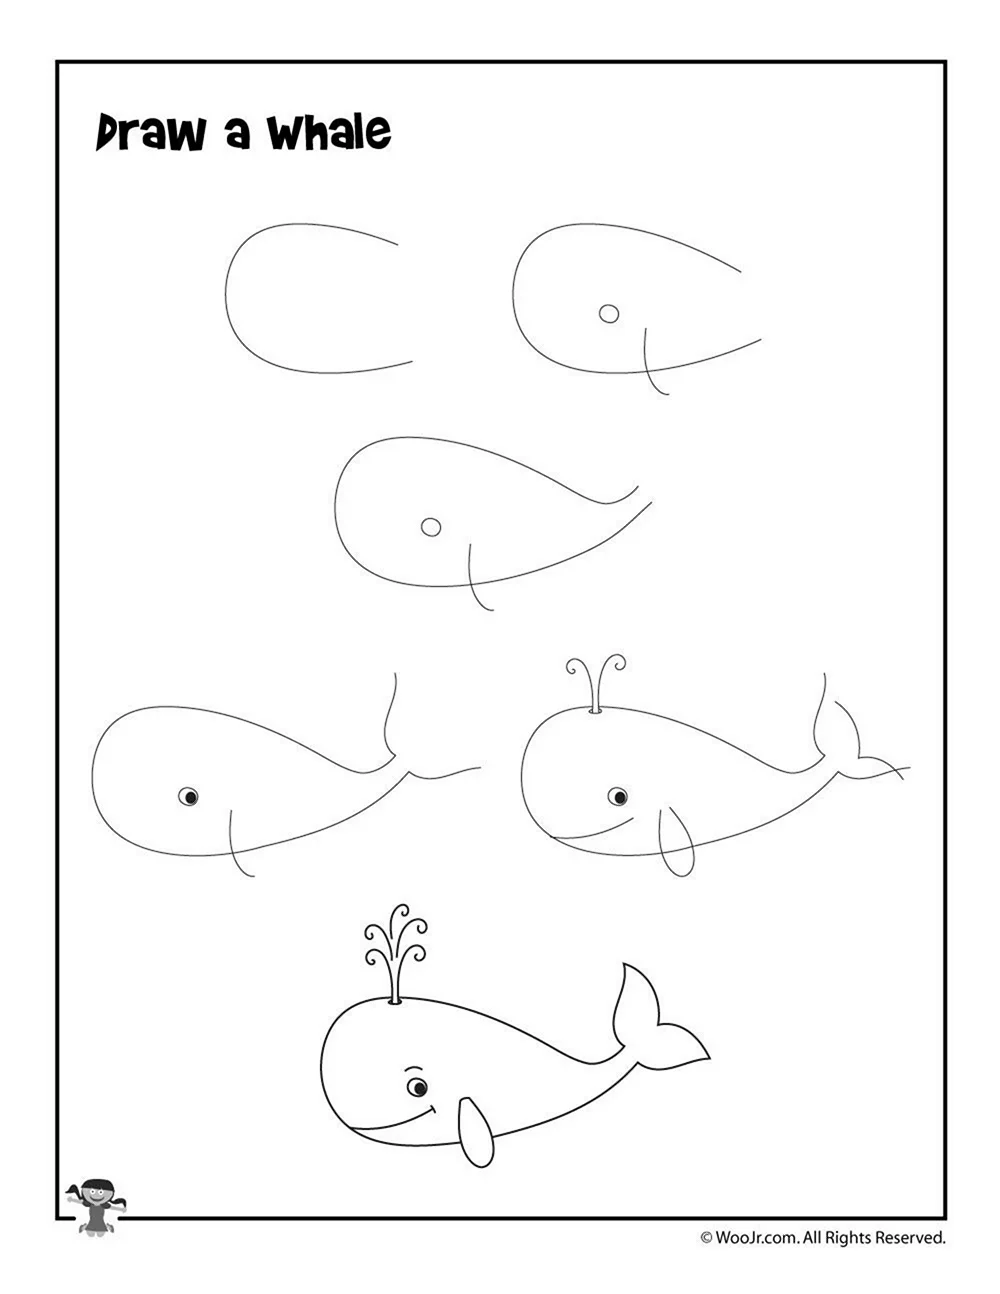 Поэтапное рисование кита для дошкольников